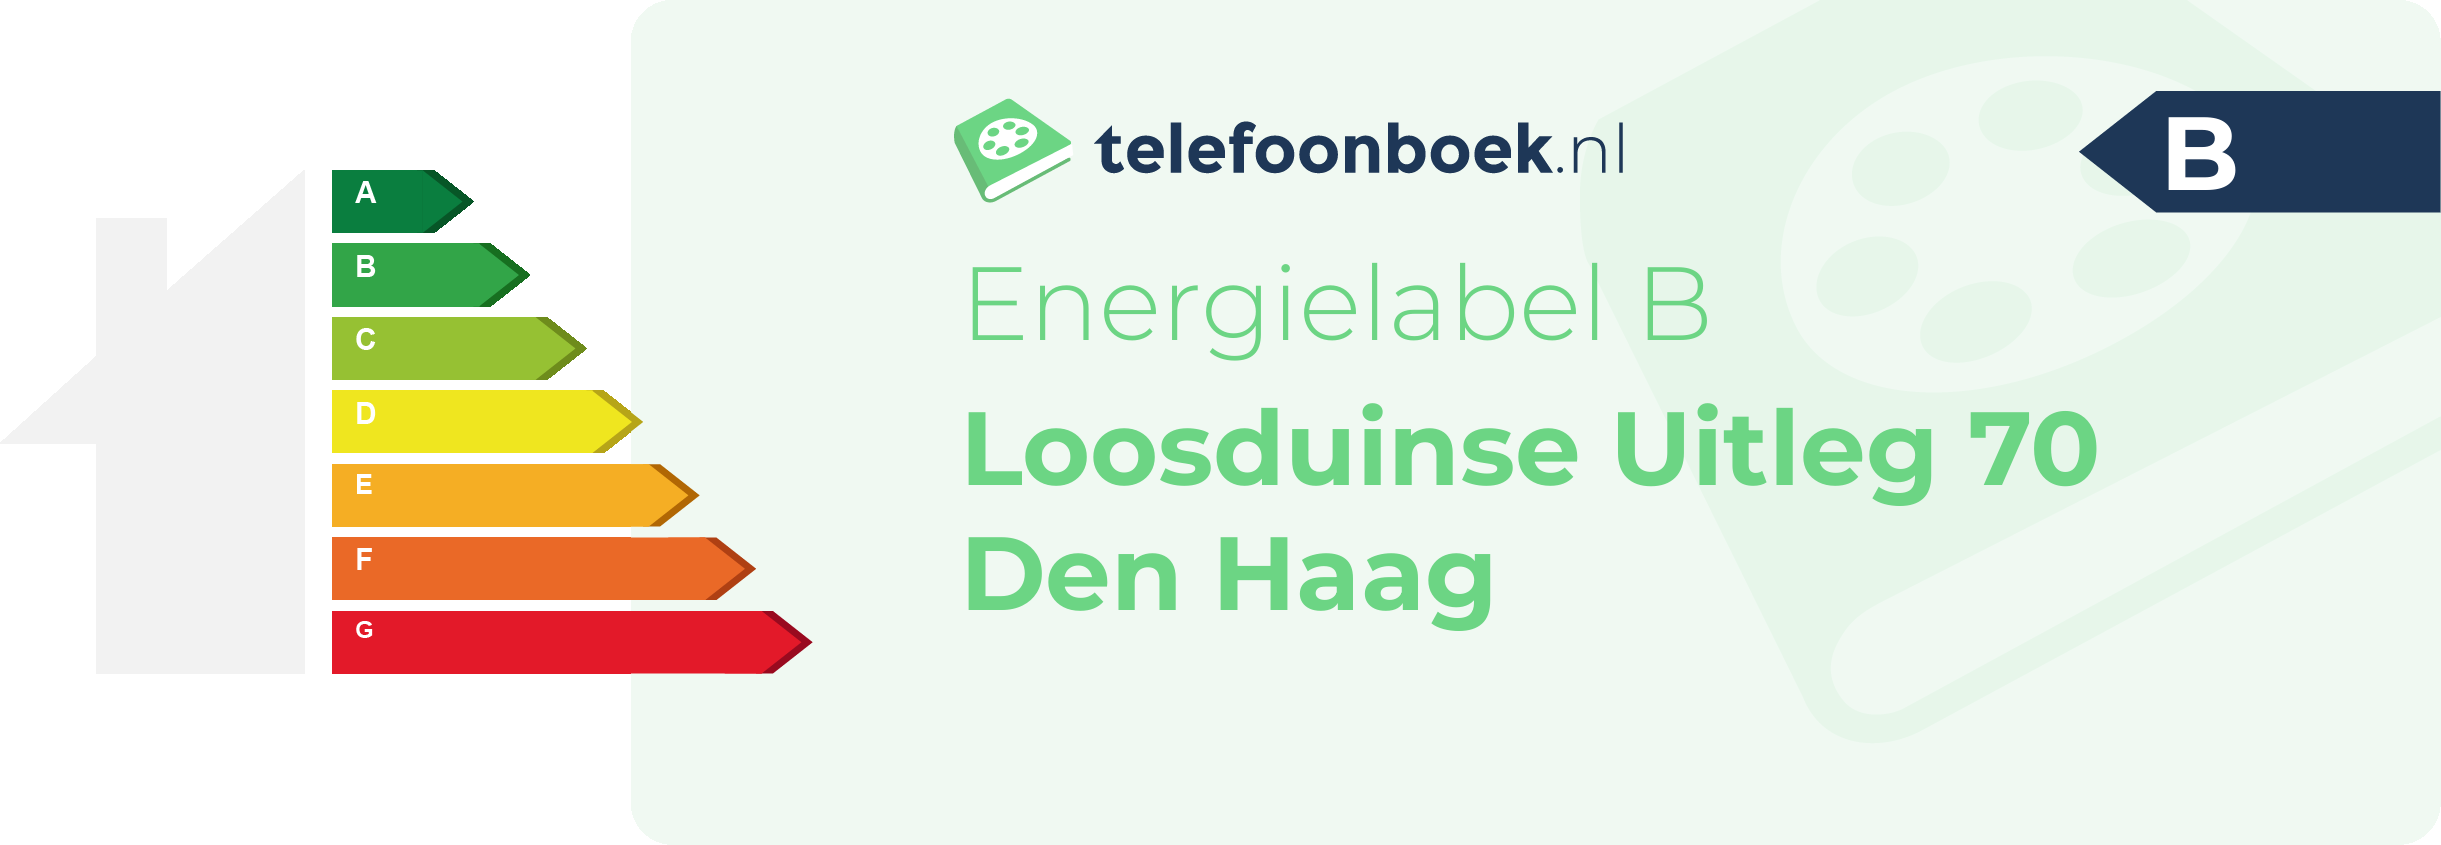 Energielabel Loosduinse Uitleg 70 Den Haag